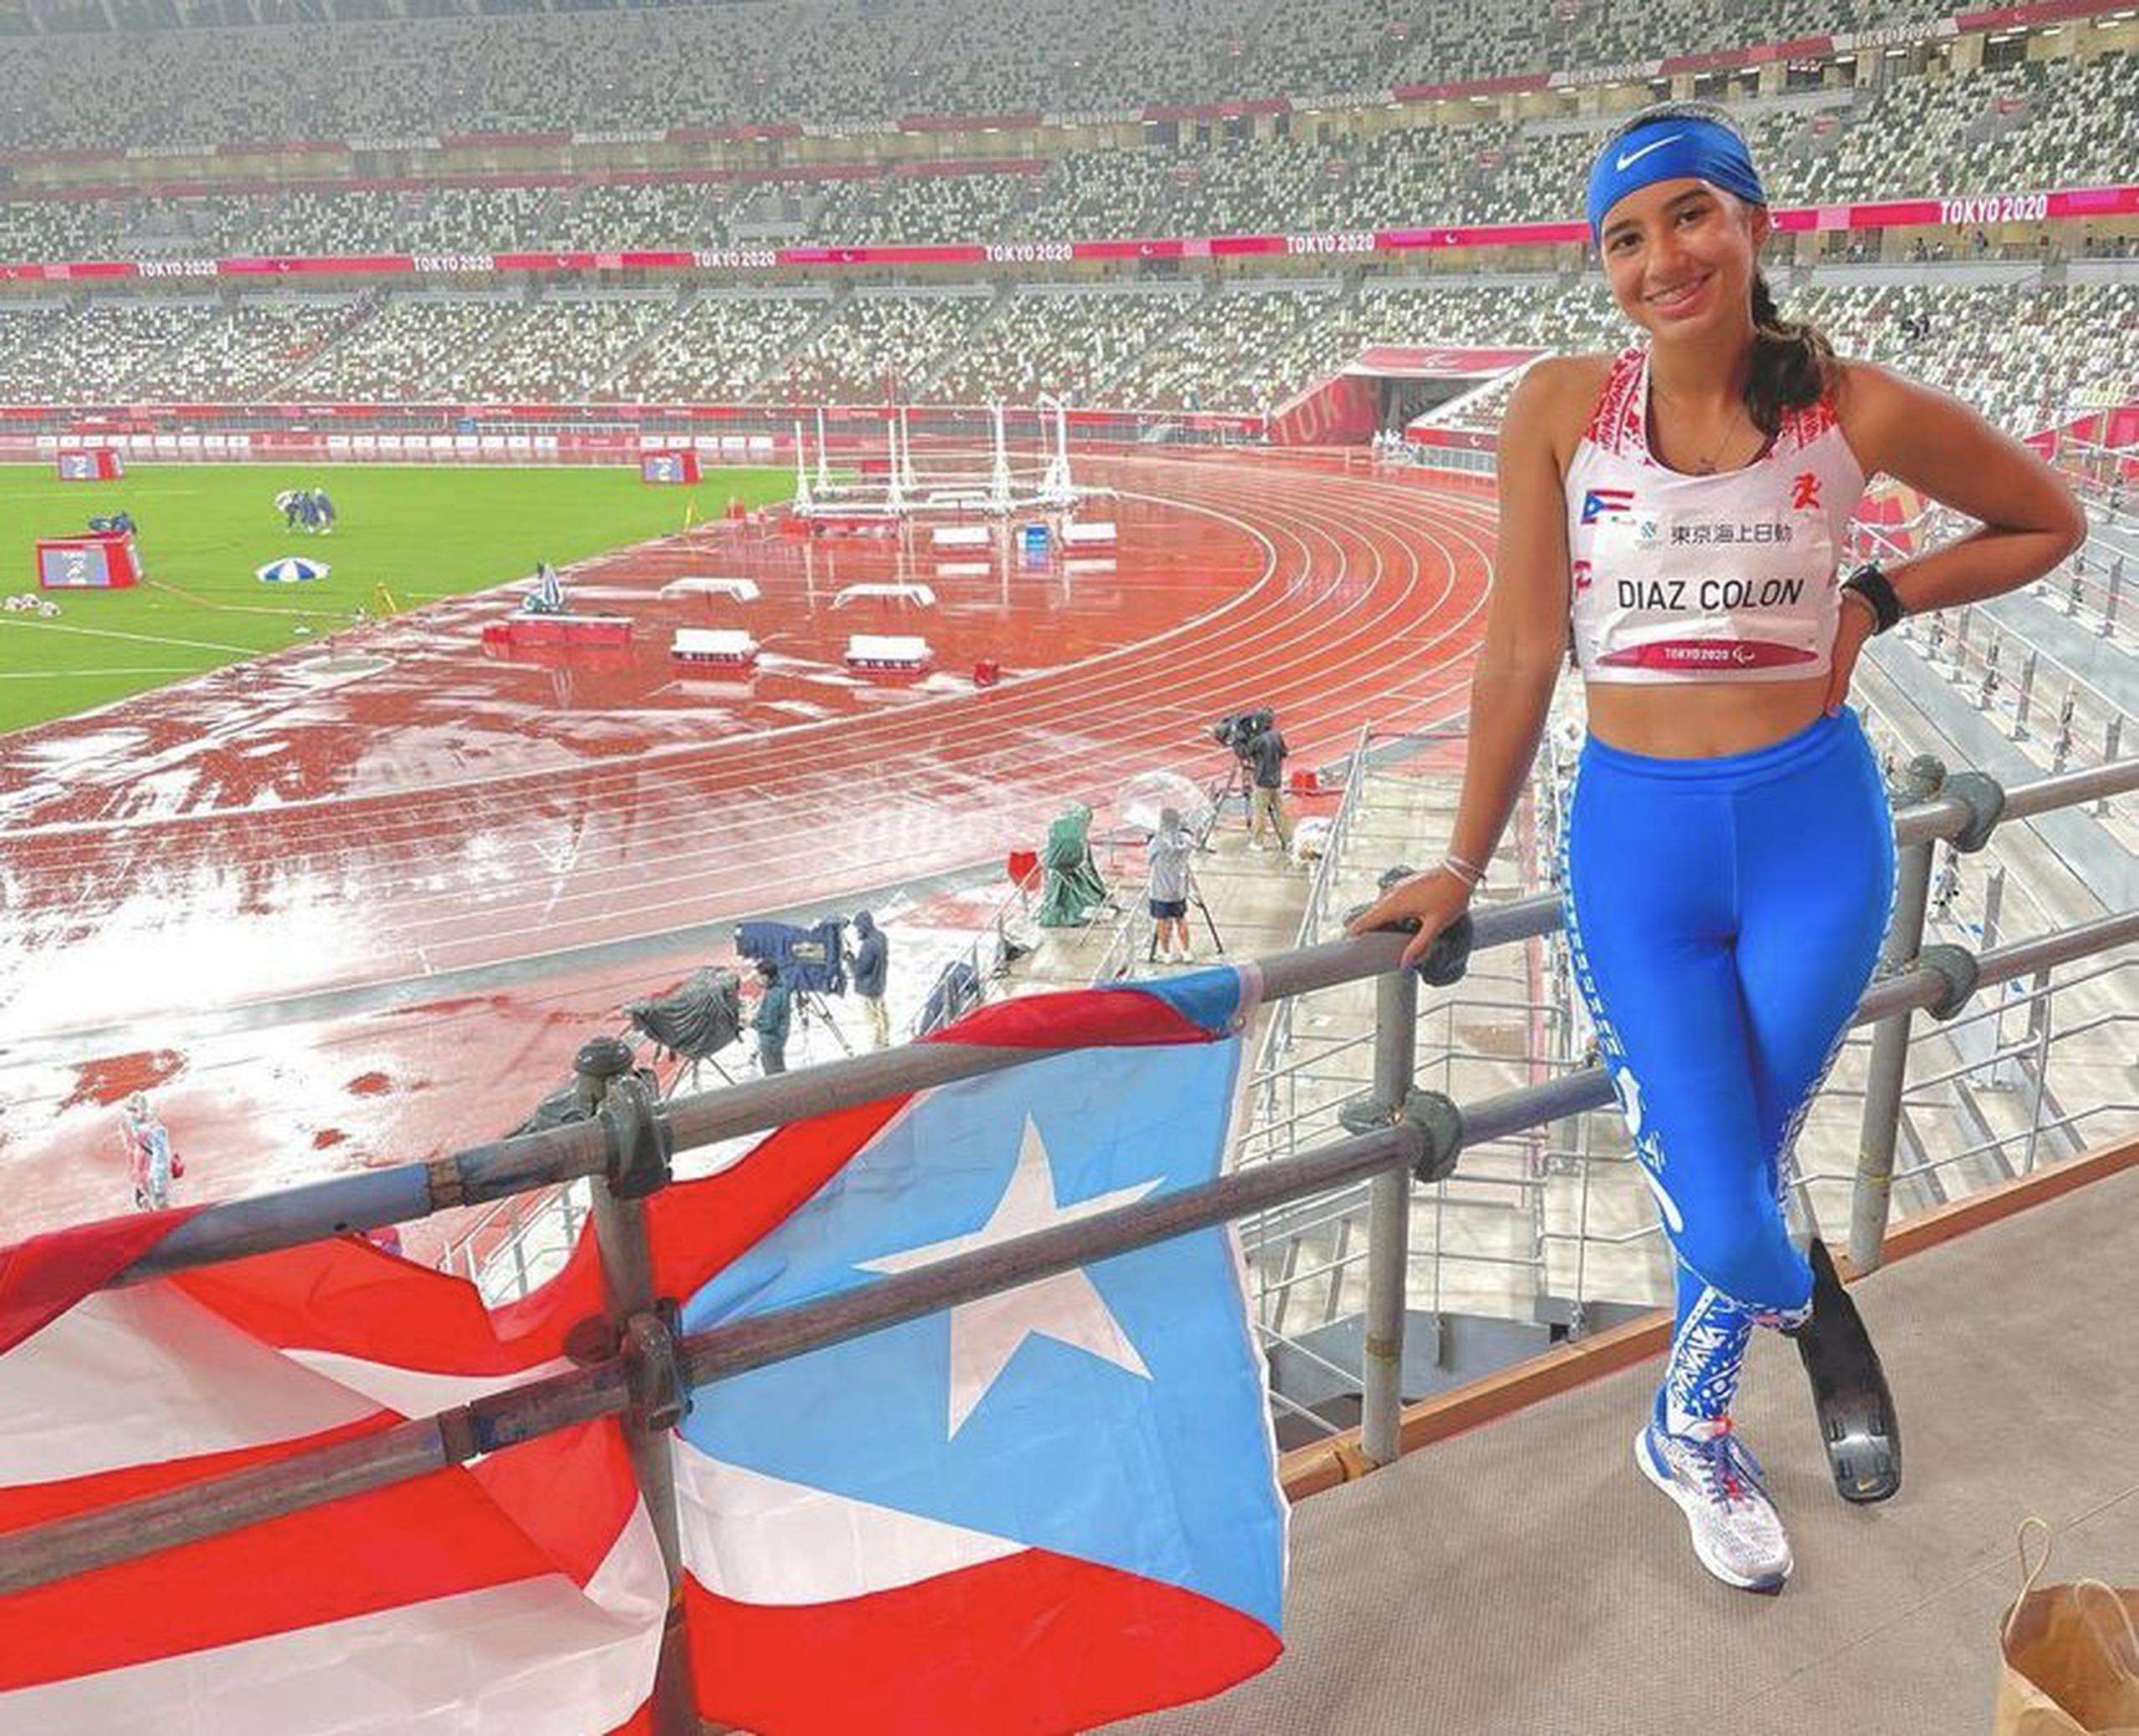 Atletas como Yaimillie Díaz representan a Puerto Rico en el nivel paralímpico, que busca el ingreso al Copur.